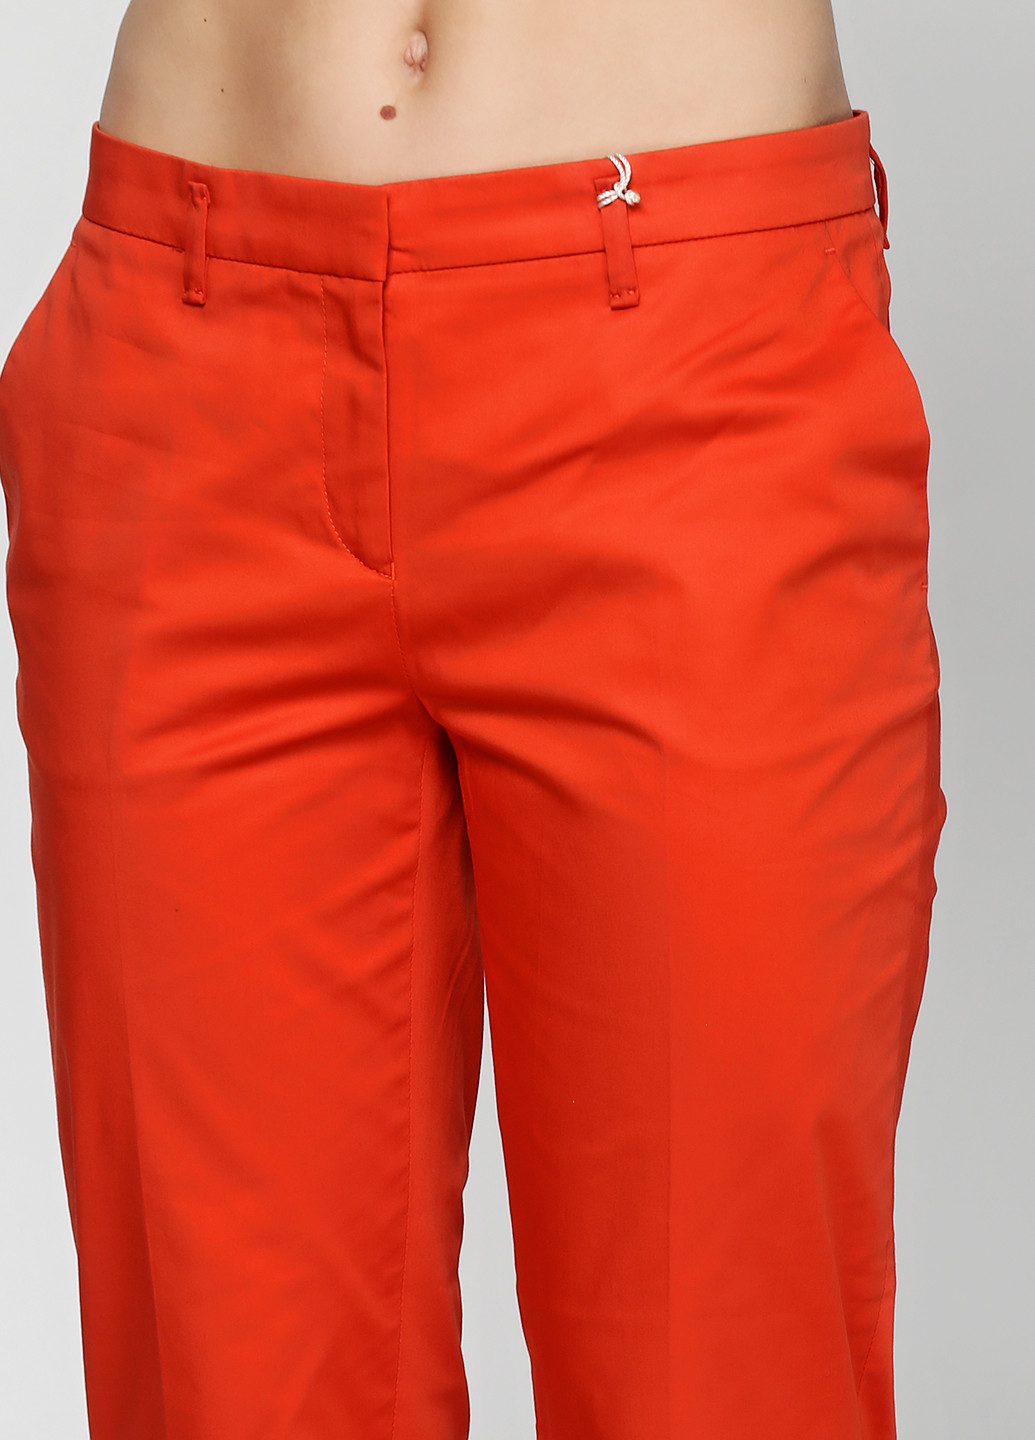 Оранжевые кэжуал демисезонные чиносы брюки Gant